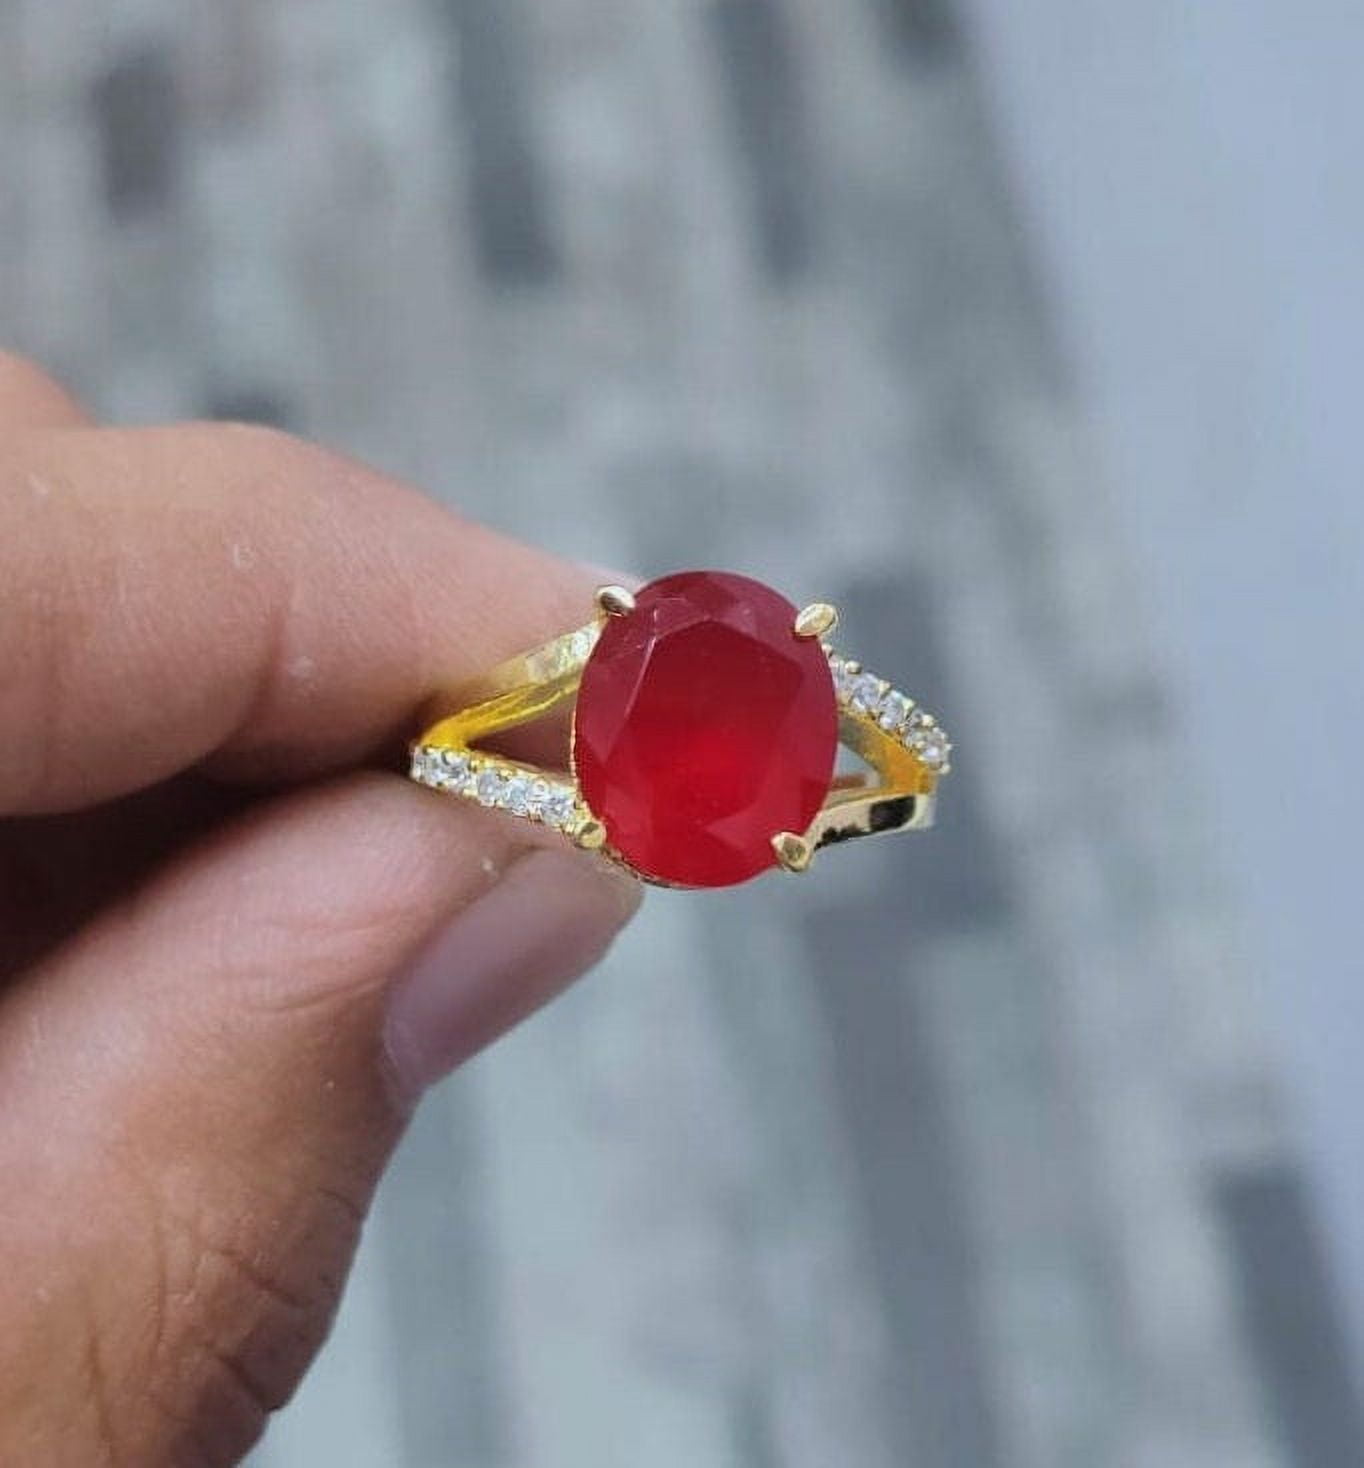 Natural Certified Ruby/manik Ring Astrological Purpose Gemstone Ring  Panchdhatu 14k Yellow Gold Filled Handmade Ring for Men & Women - Etsy